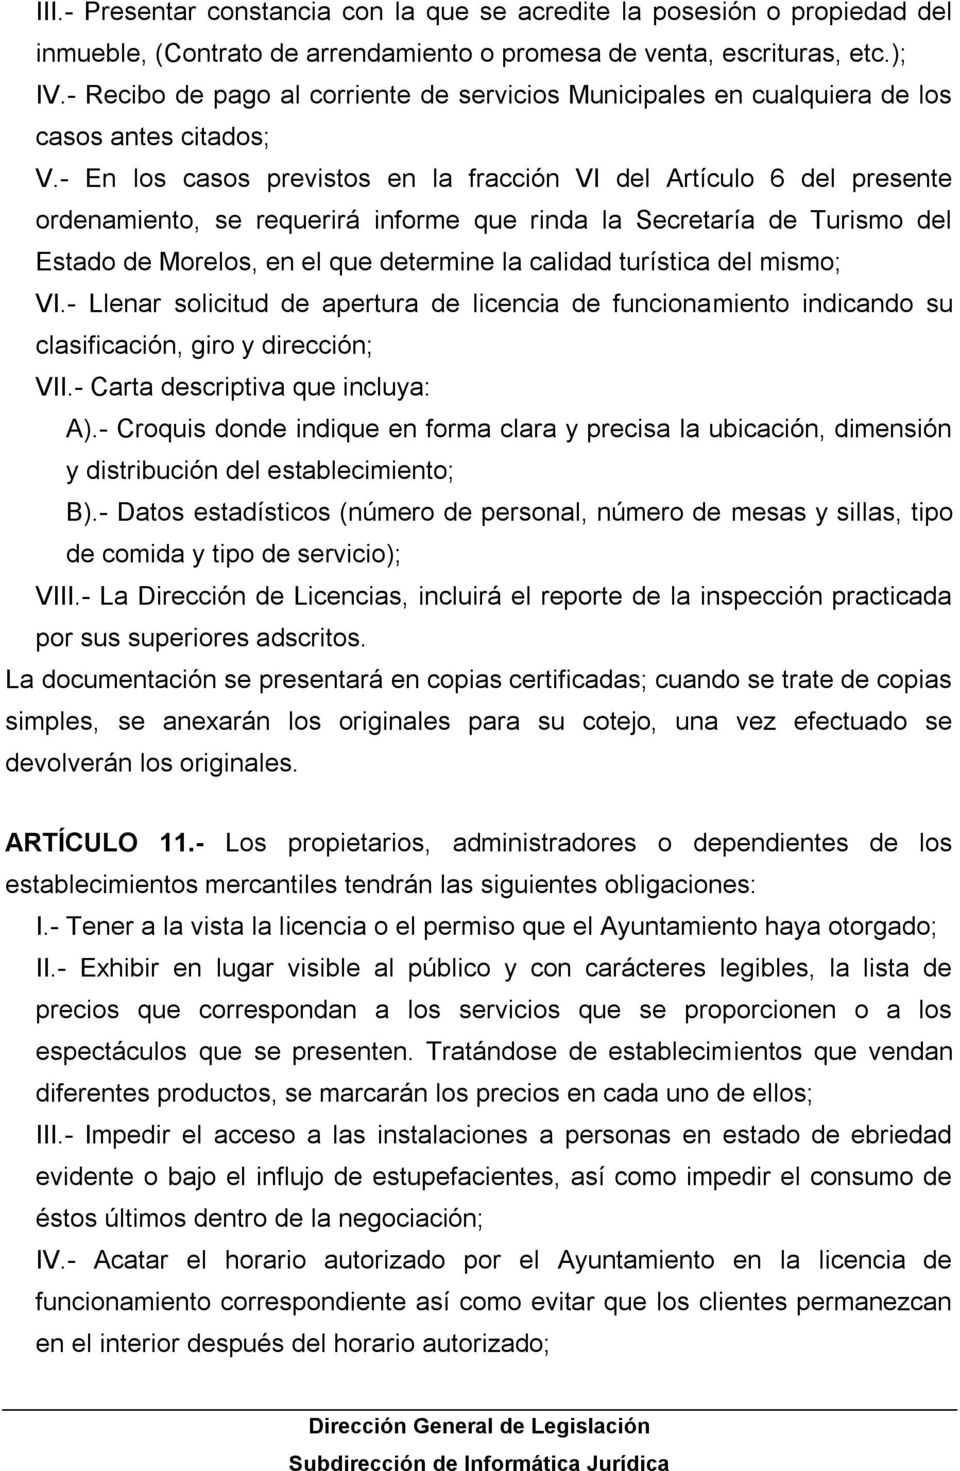 - En los casos previstos en la fracción VI del Artículo 6 del presente ordenamiento, se requerirá informe que rinda la Secretaría de Turismo del Estado de Morelos, en el que determine la calidad